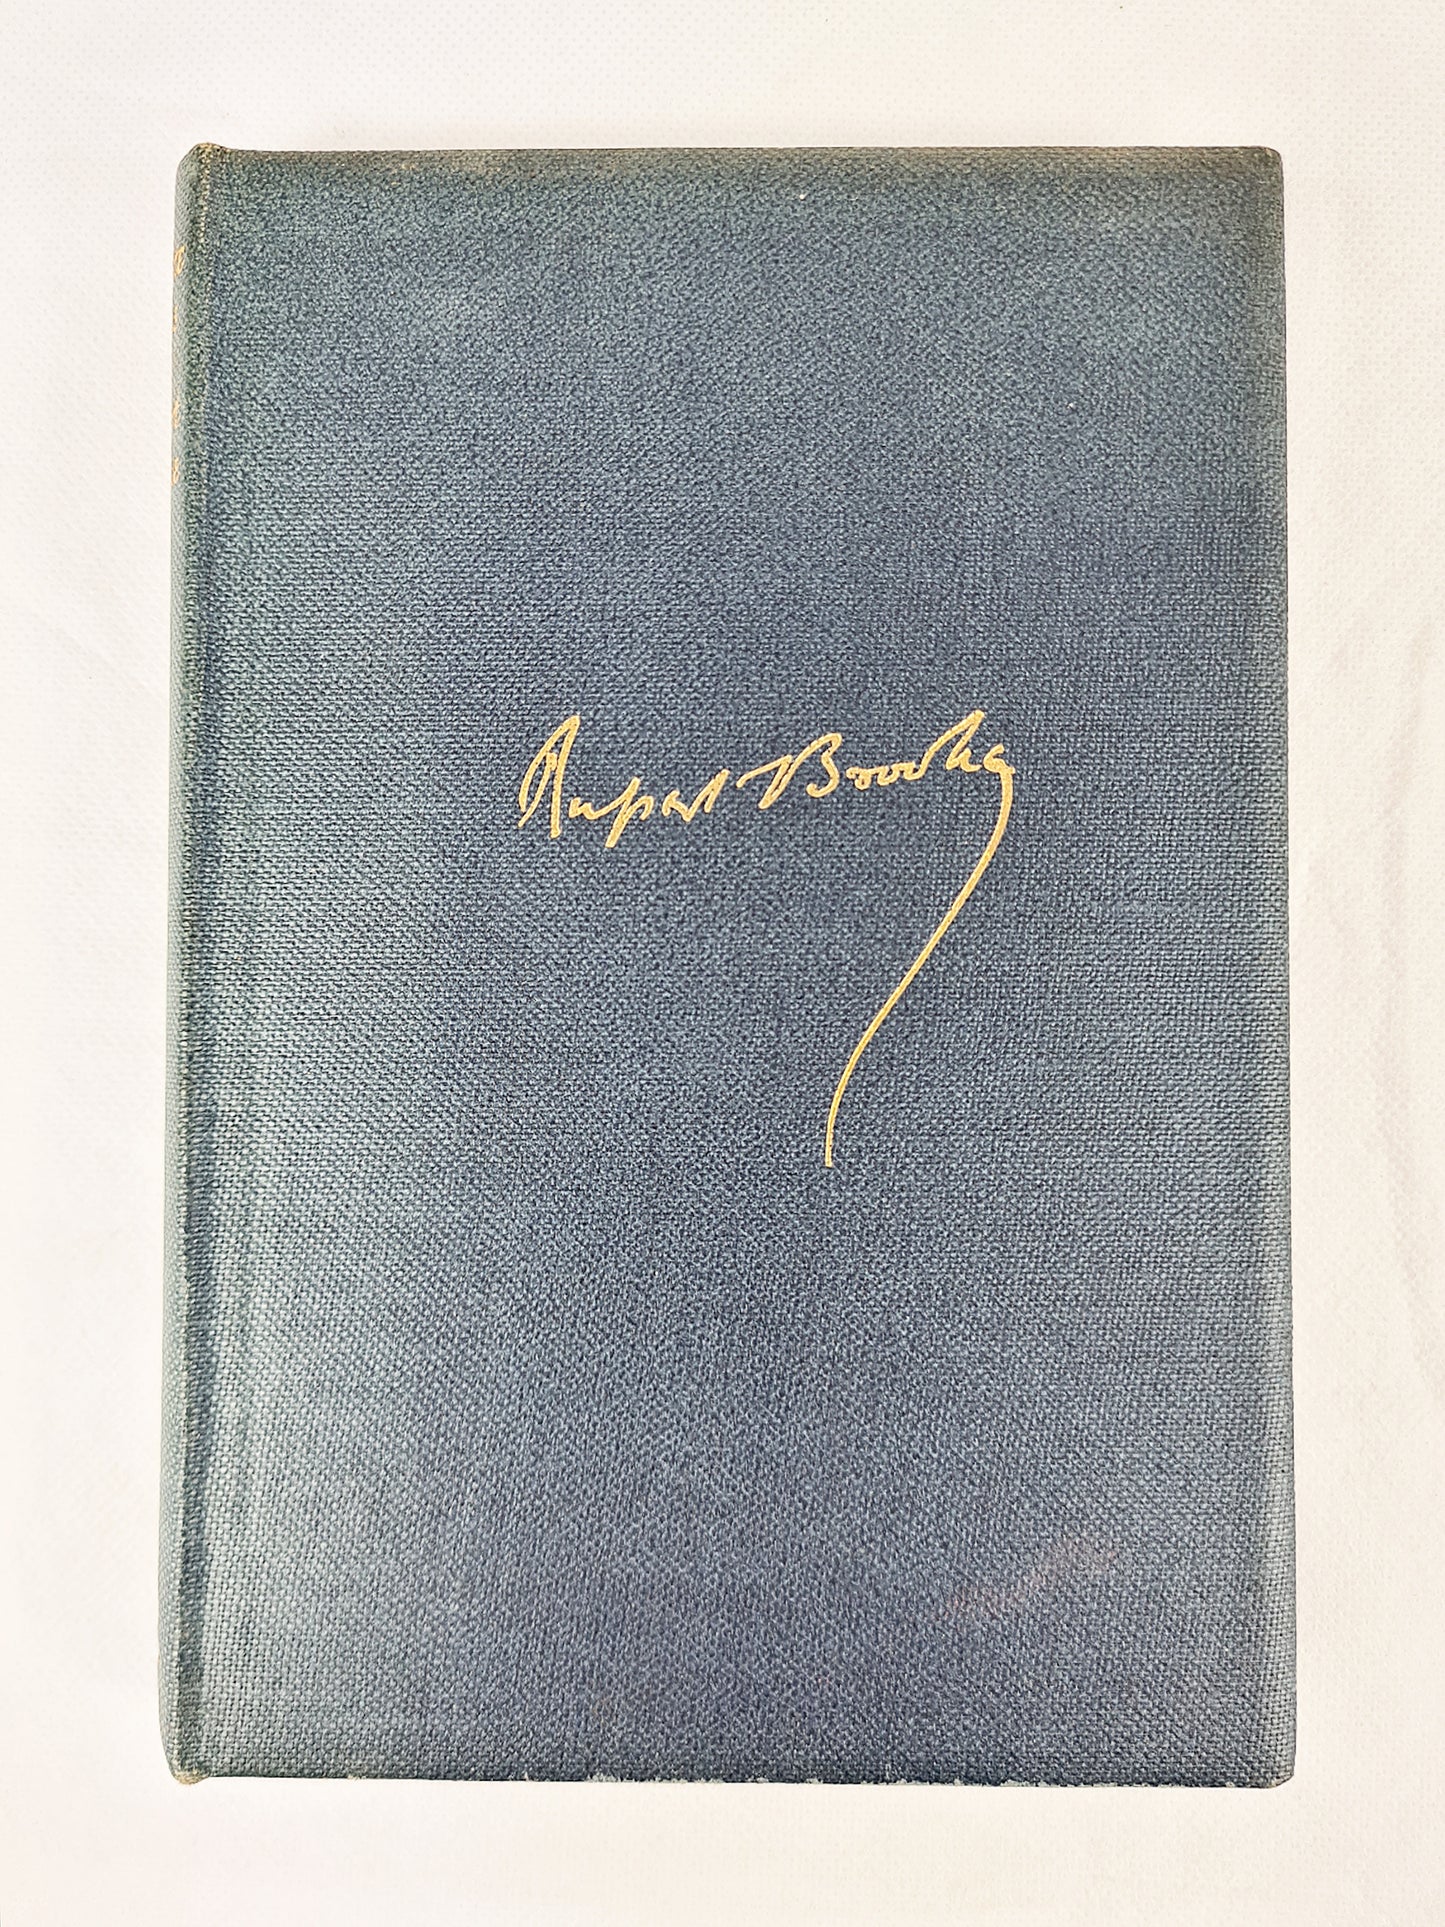 Complete Poems Of Rupert Brooke